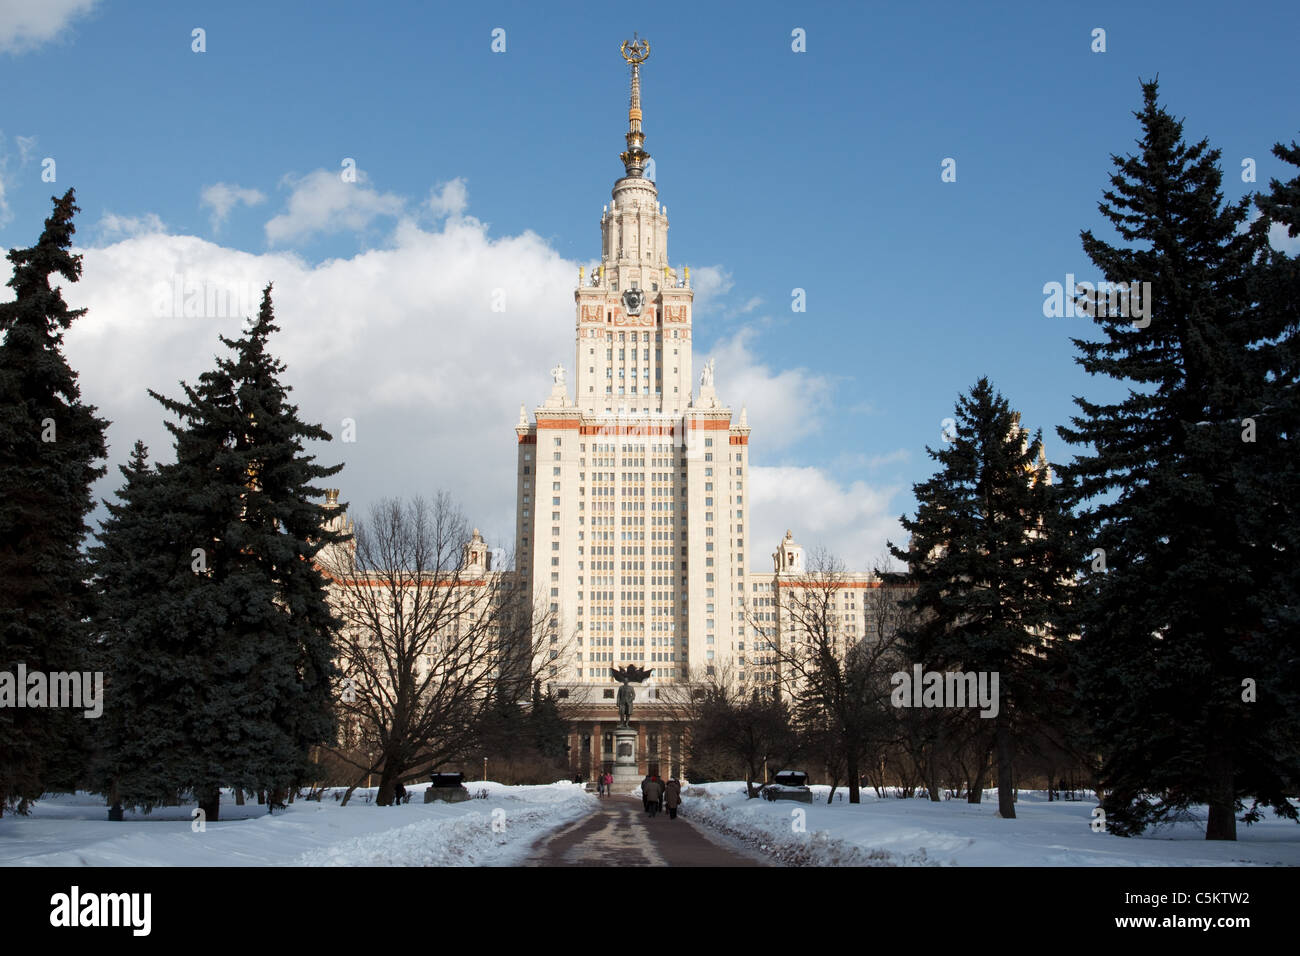 La Universidad Estatal de Moscú Lomonosov Edificio Principal en invierno Foto de stock